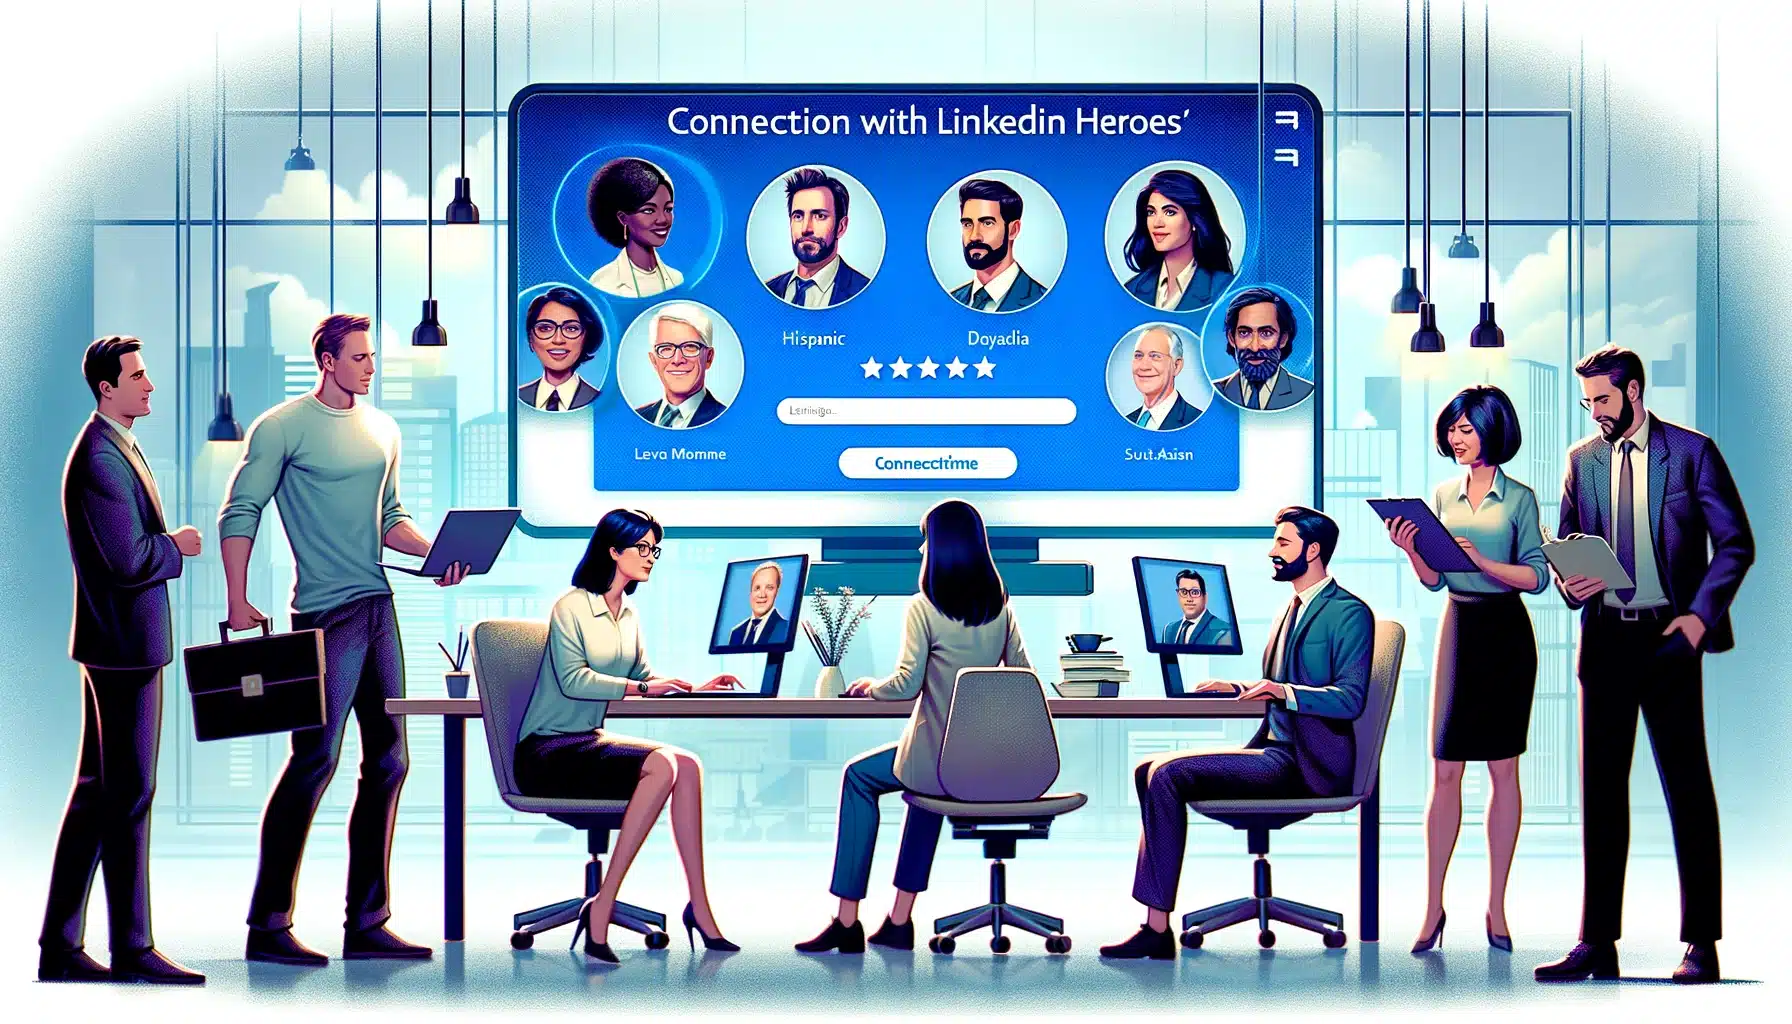 Koneksi Dengan Pahlawan LinkedIn